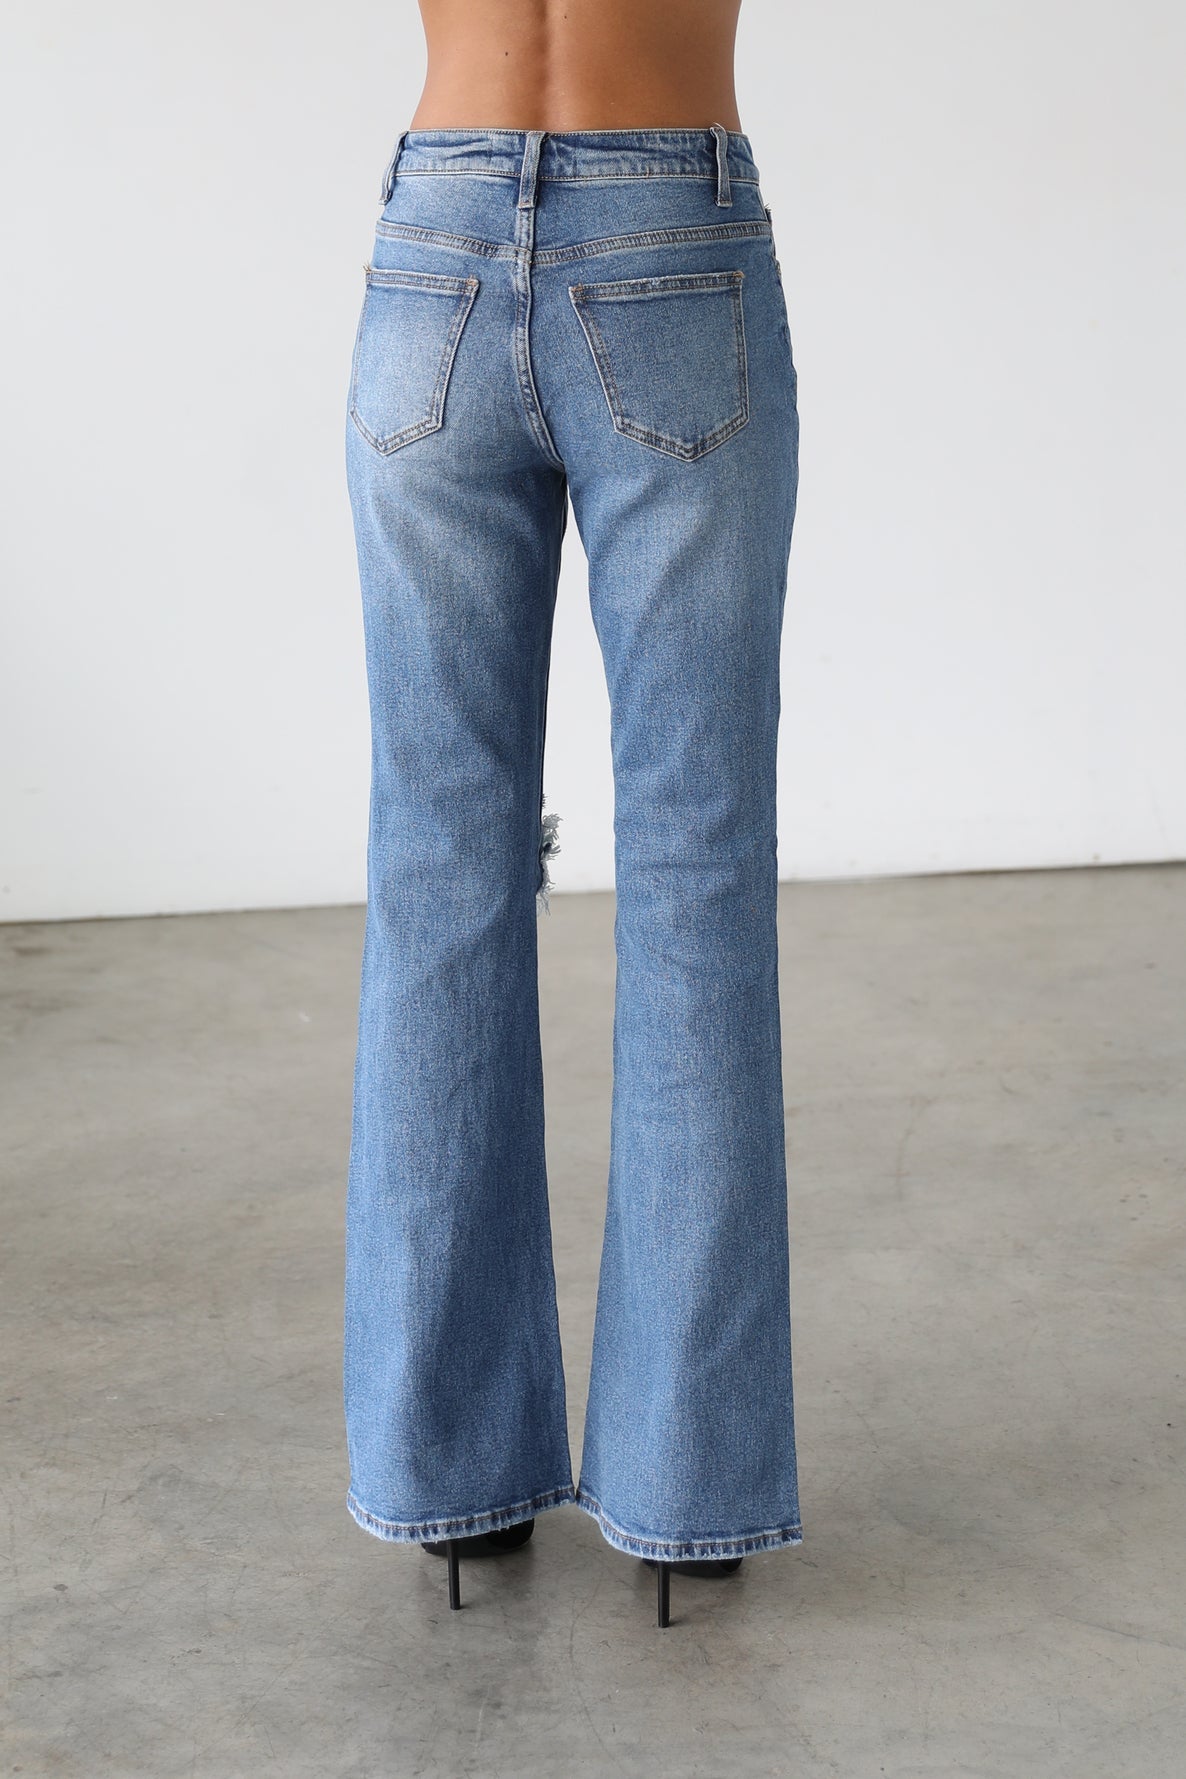 High Rise Flare Leg Denim Jeans - Medium-7101